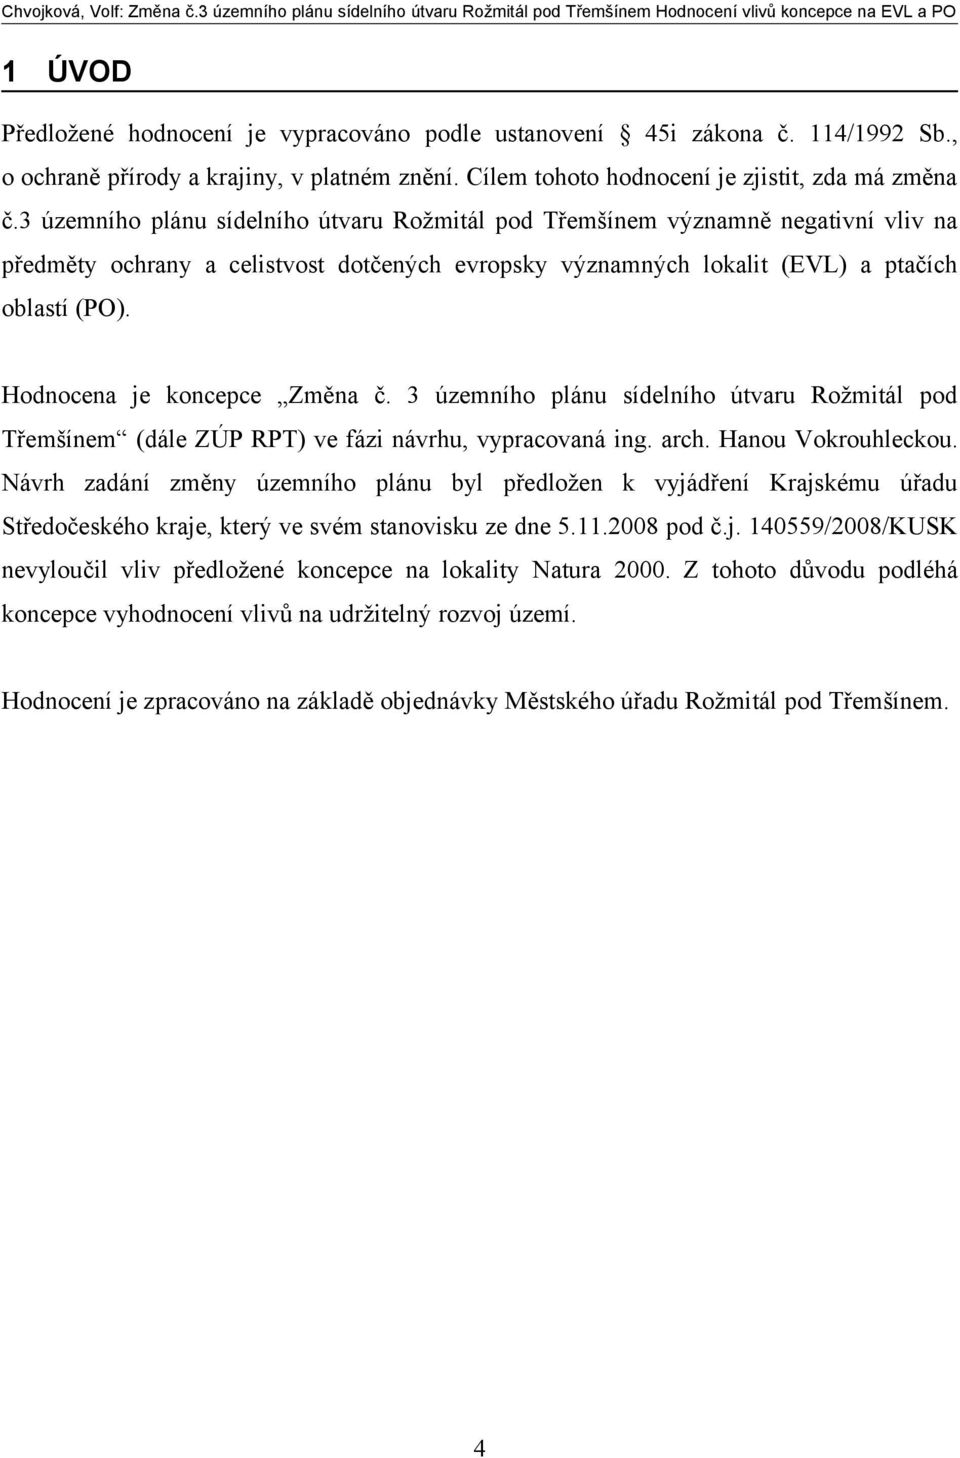 Hodnocena je koncepce Změna č. 3 územního plánu sídelního útvaru Rožmitál pod Třemšínem (dále ZÚP RPT) ve fázi návrhu, vypracovaná ing. arch. Hanou Vokrouhleckou.